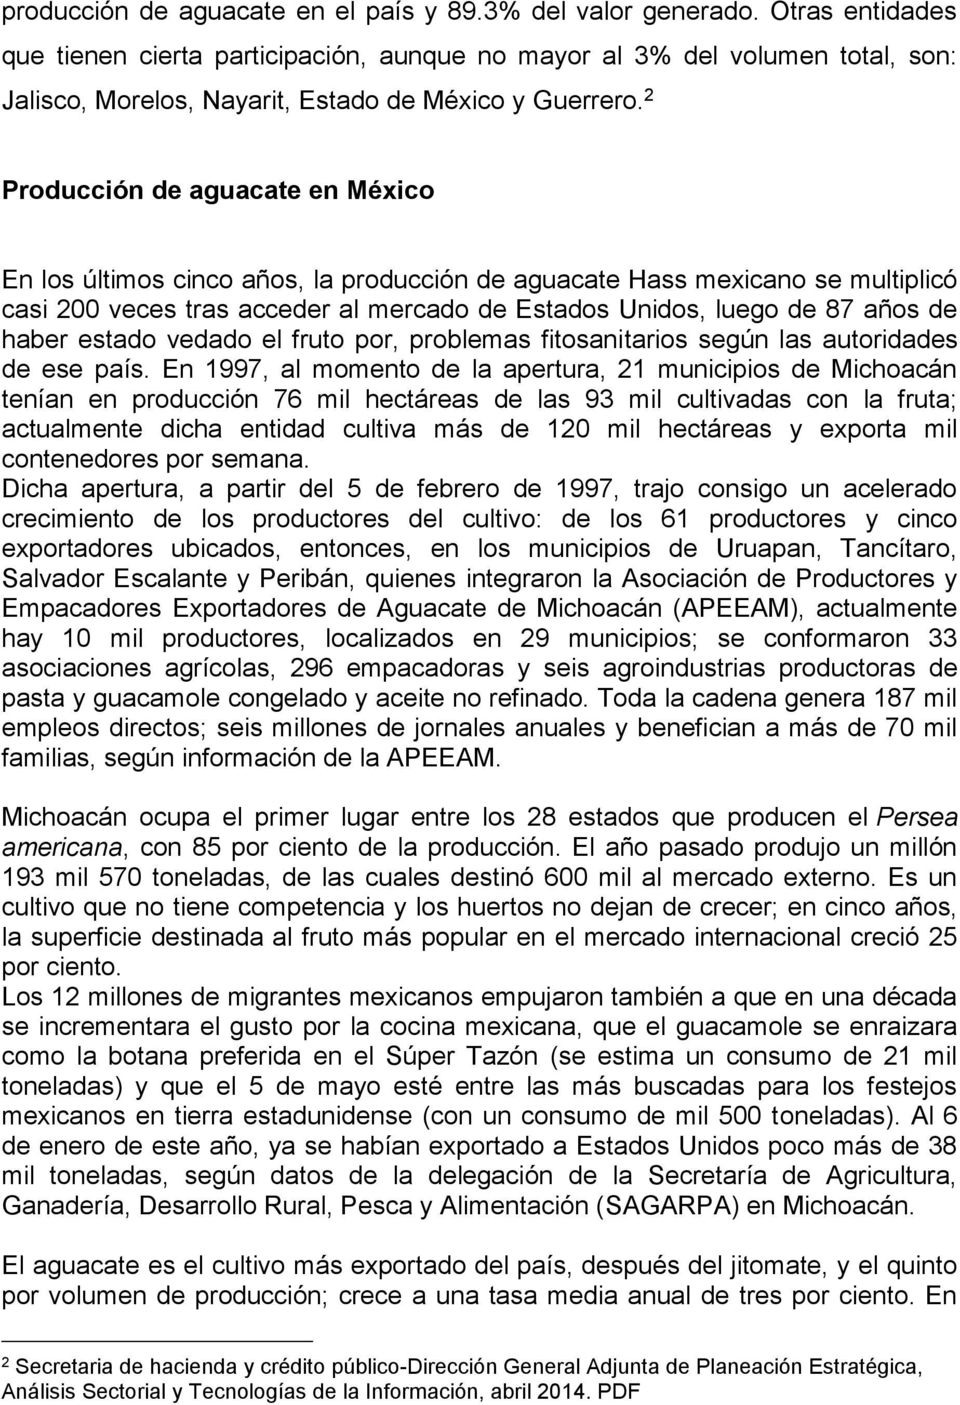 2 Producción de aguacate en México En los últimos cinco años, la producción de aguacate Hass mexicano se multiplicó casi 200 veces tras acceder al mercado de Estados Unidos, luego de 87 años de haber